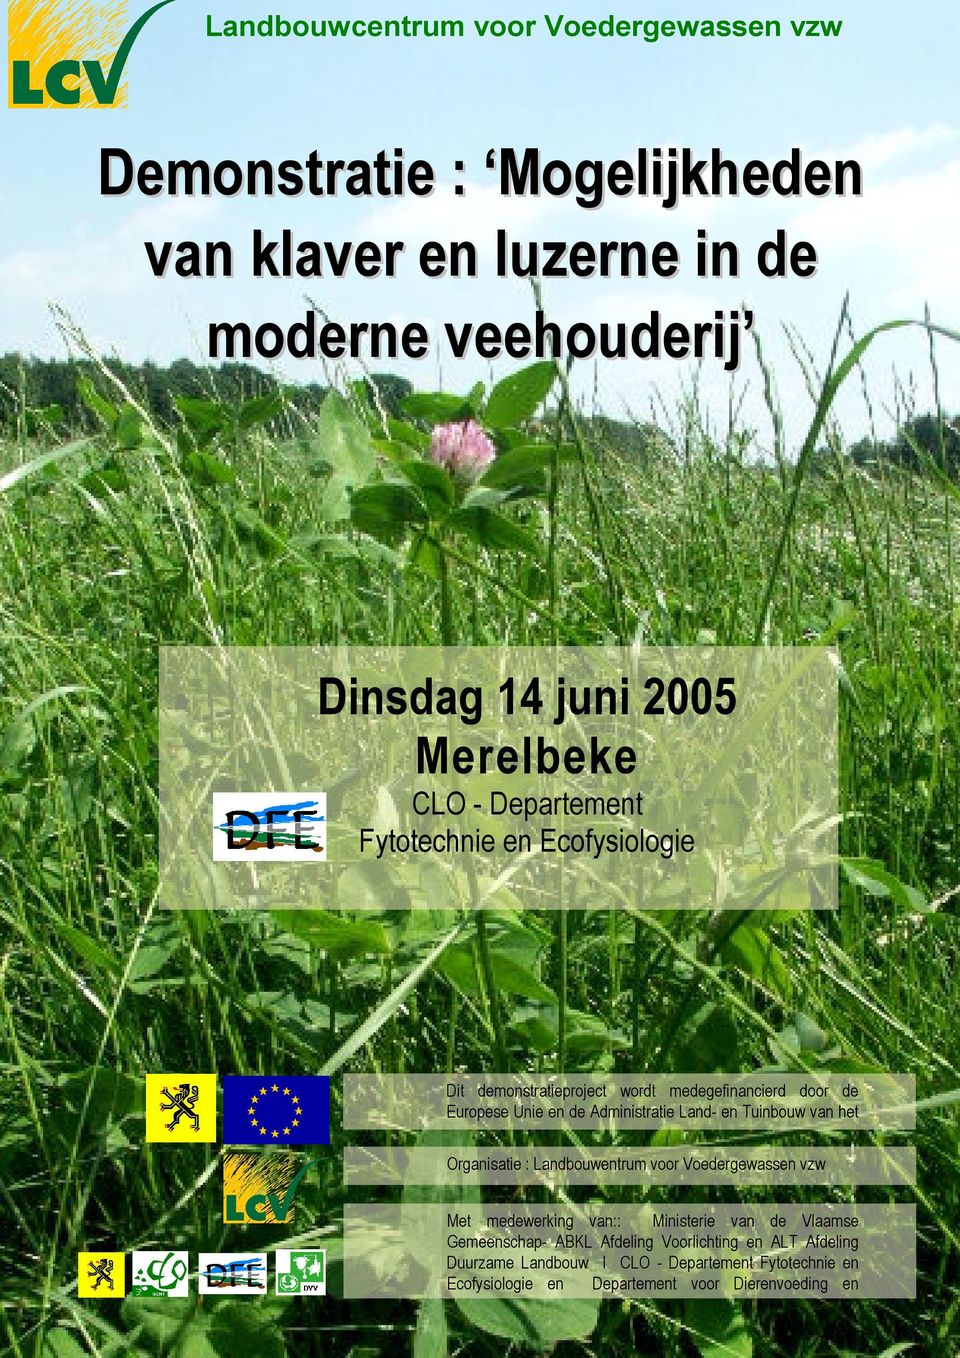 van het Ministerie van de Vlaamse Gemeenschap Organisatie : Landbouwentrum voor Voedergewassen vzw Met medewerking van:: Ministerie van de Vlaamse